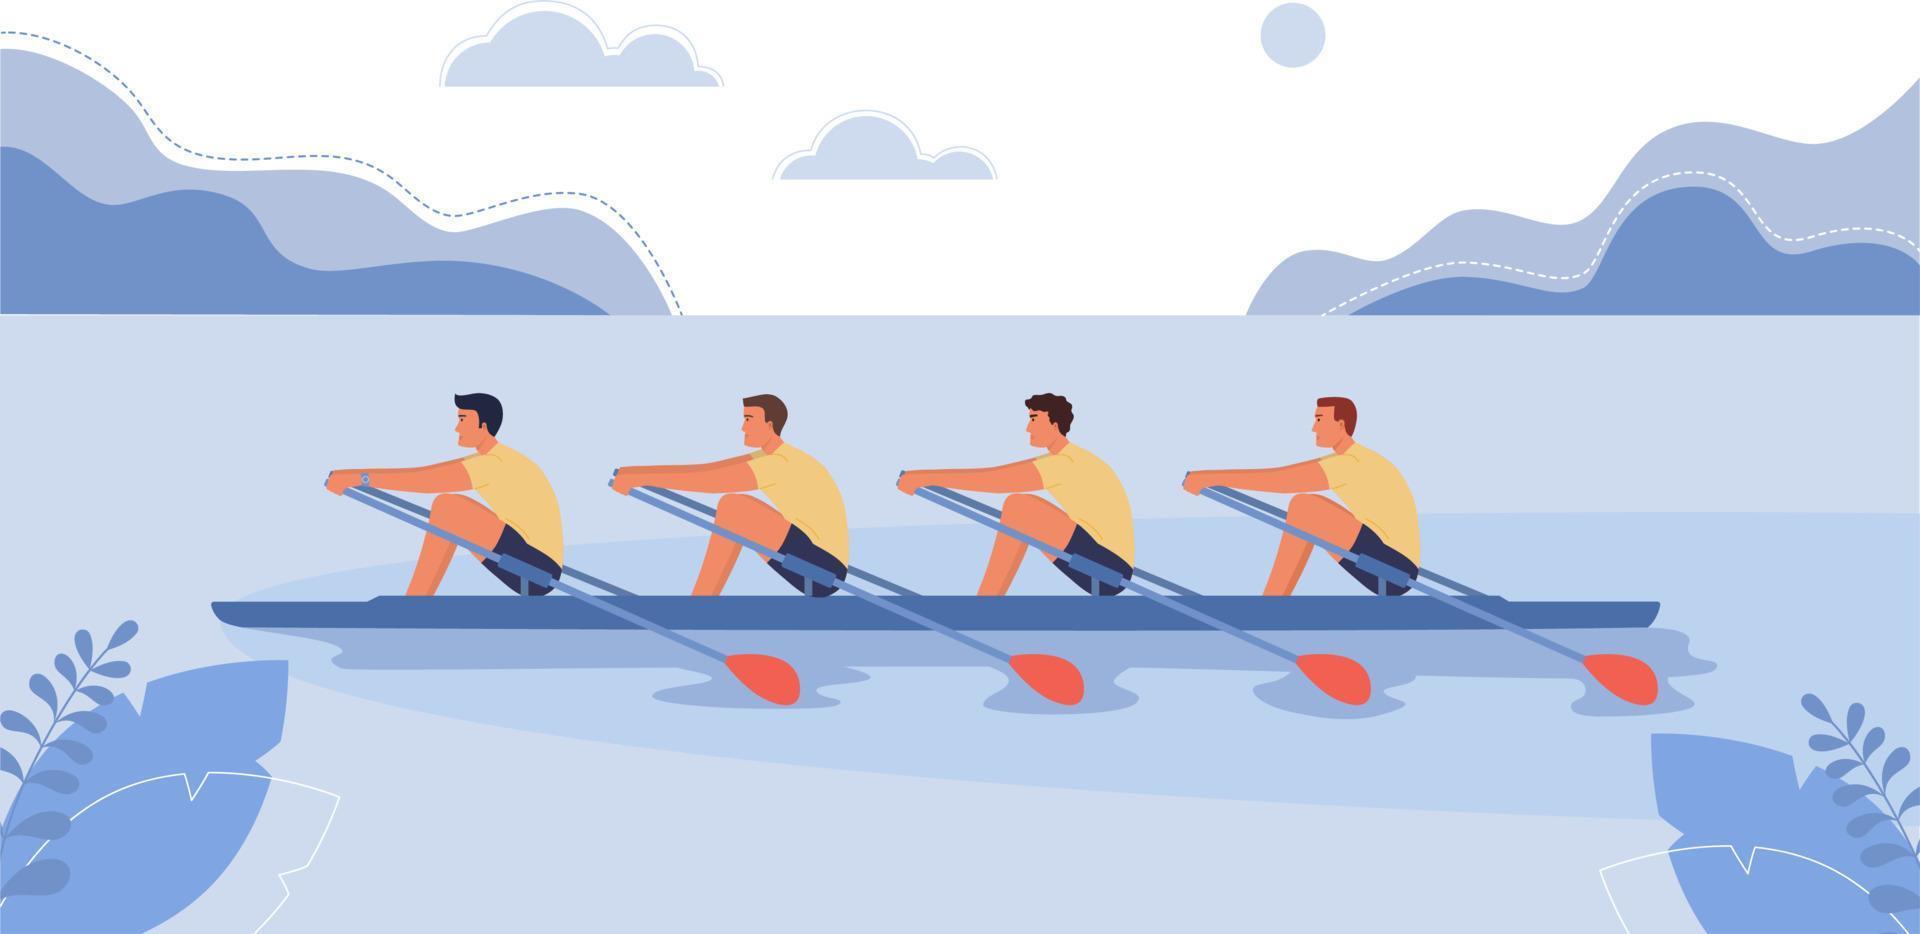 quattro atleti nuotare su un' barca. il concetto di canottaggio gare. vettore illustrazione, cartone animato stile.